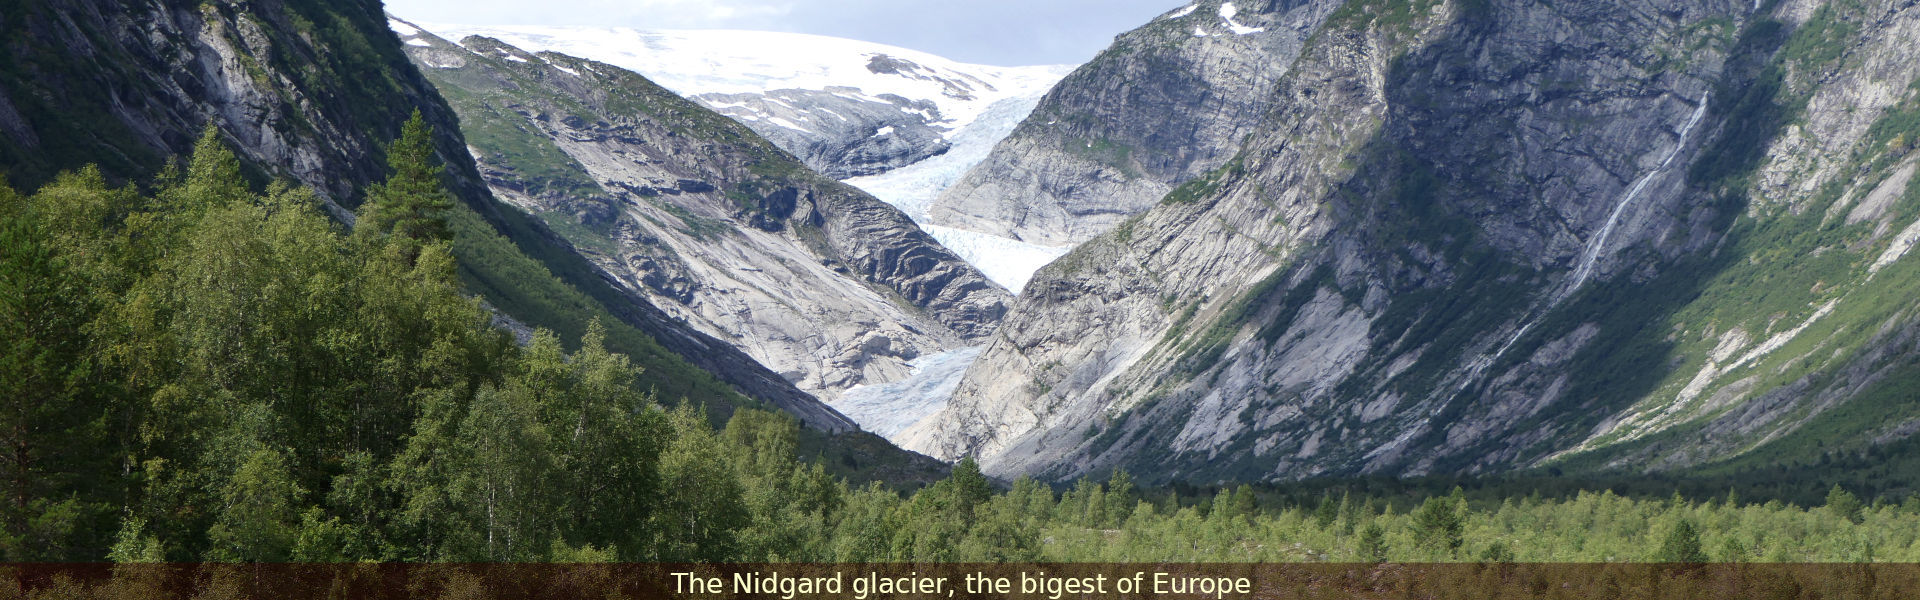 The Nidgard glacier, Norway